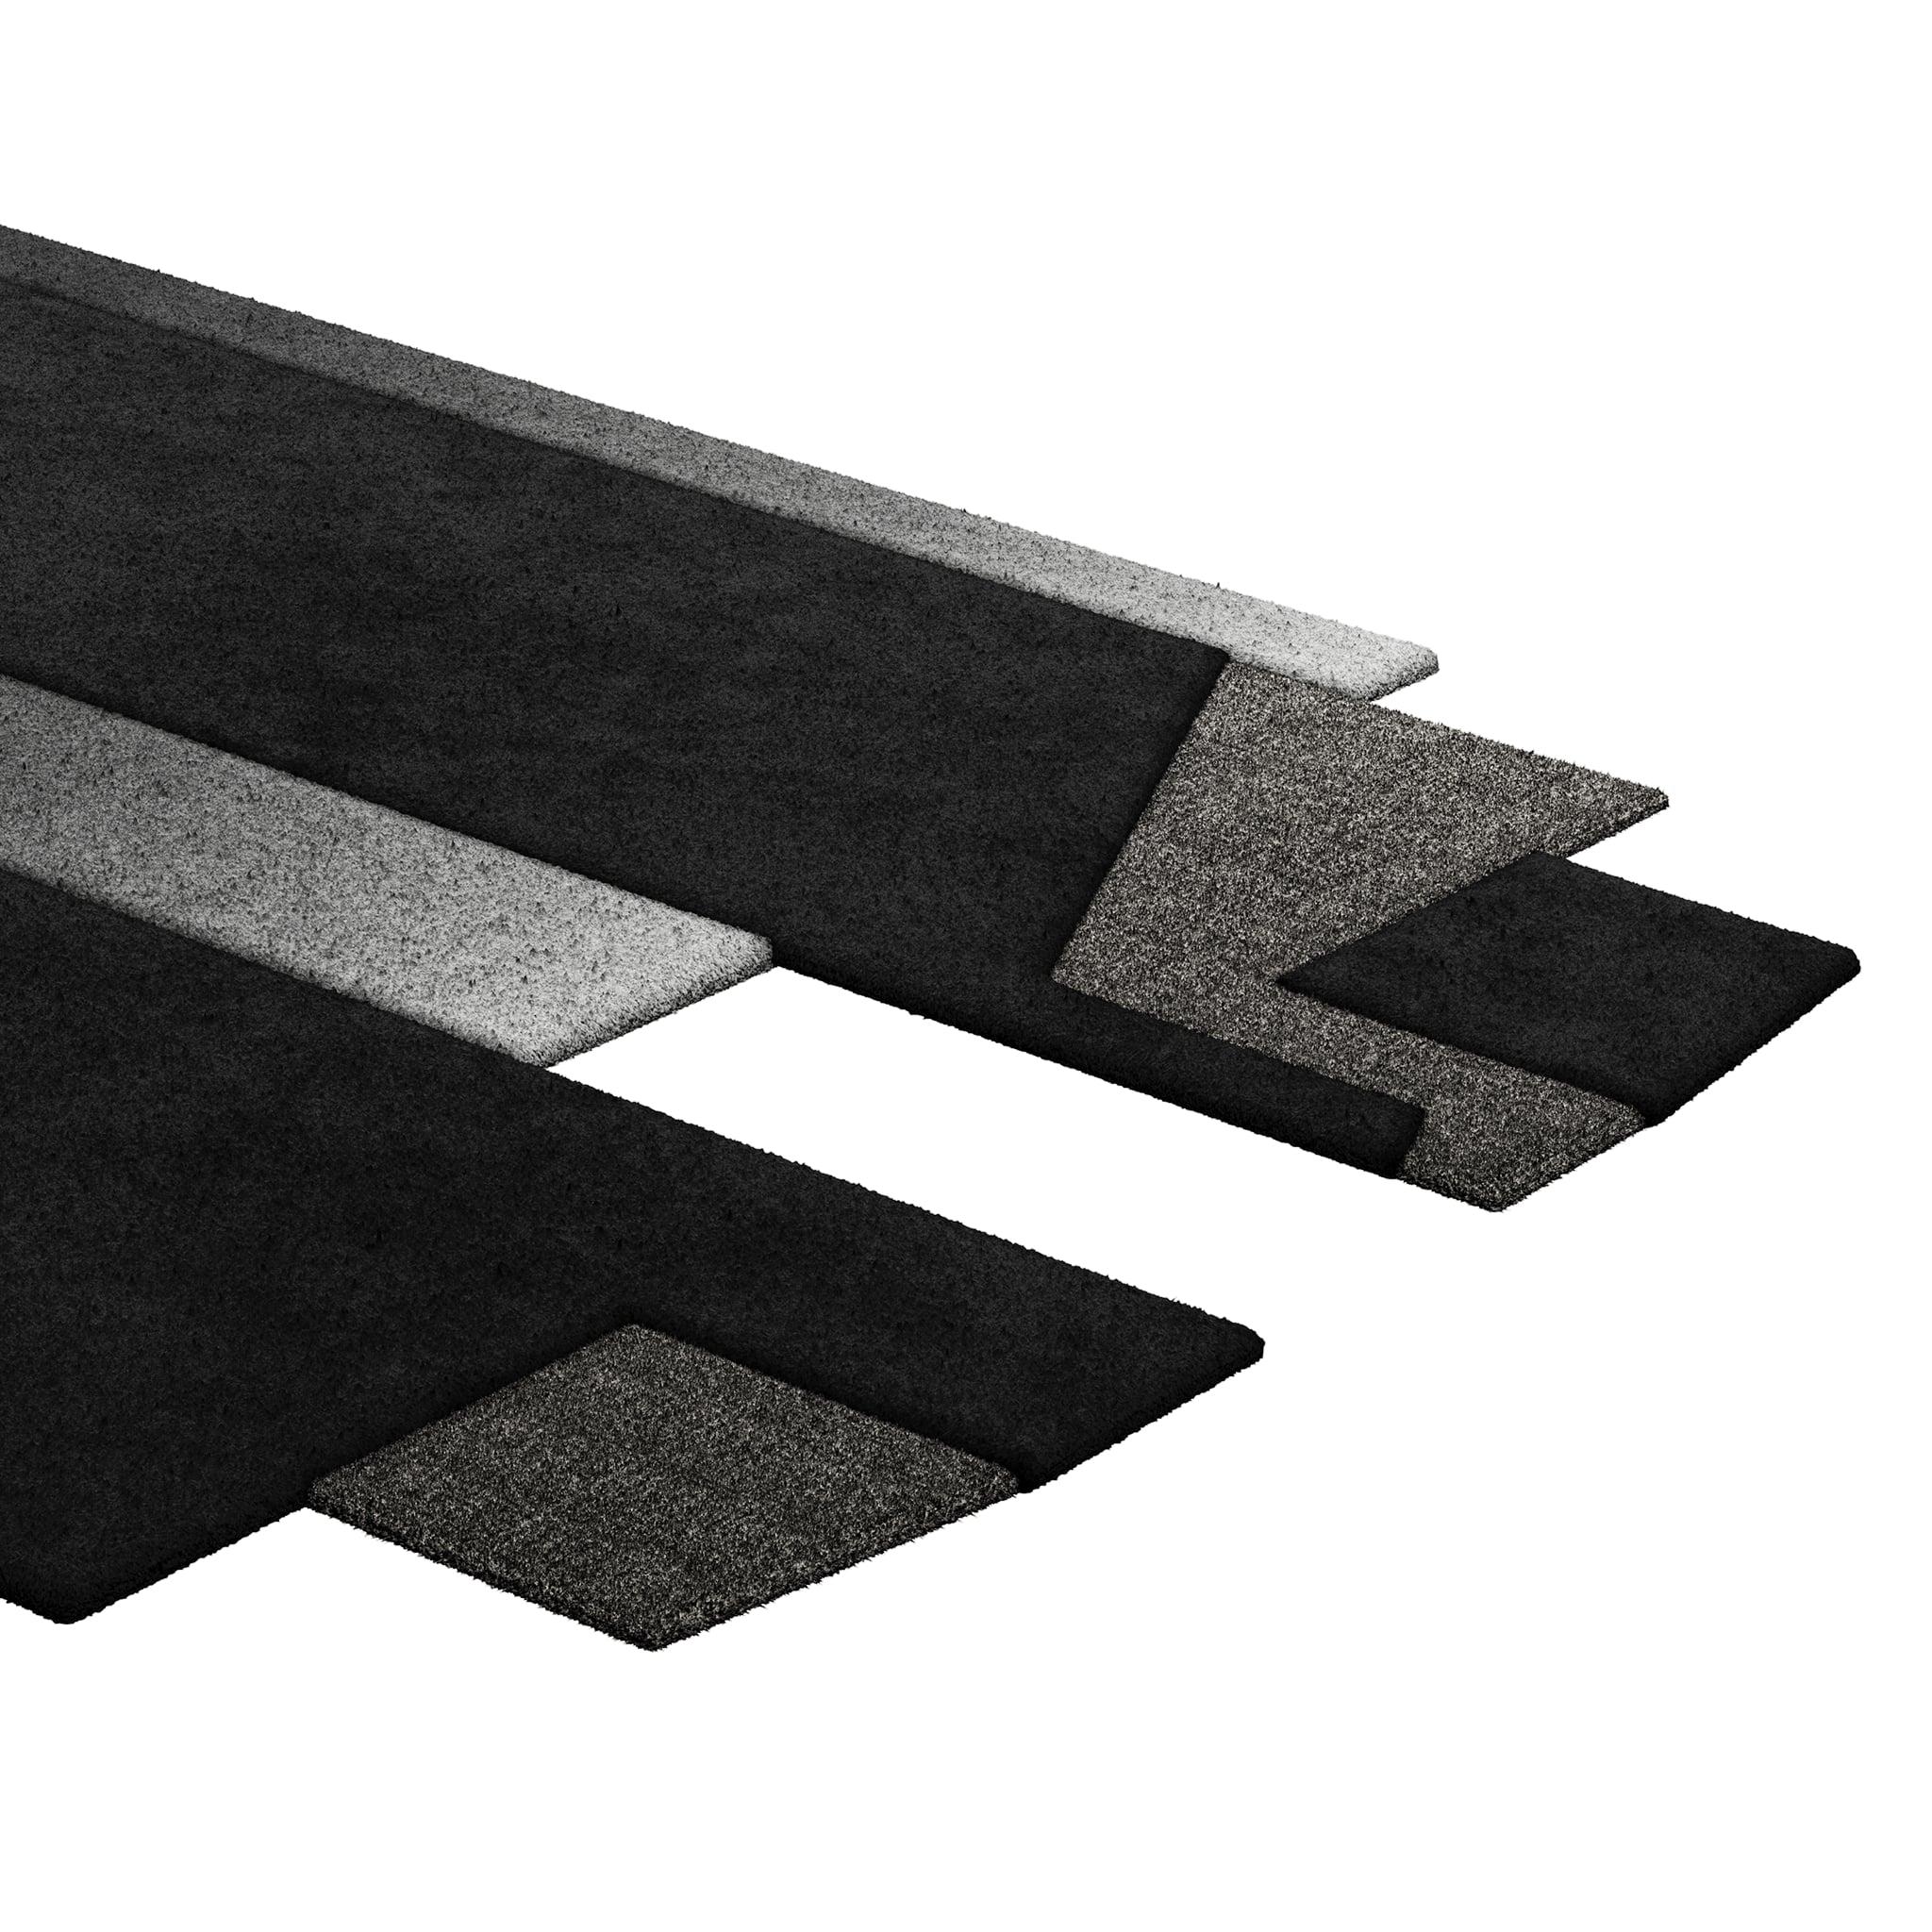 Tapis Retro #004 ist ein Retro-Teppich mit unregelmäßiger Form und monochromen Farbtönen. Inspiriert von architektonischen Linien, setzt dieser geometrische Teppich in jedem Wohnbereich ein Zeichen.

Mit einer 3D-Tufting-Technik, die Schnitt- und